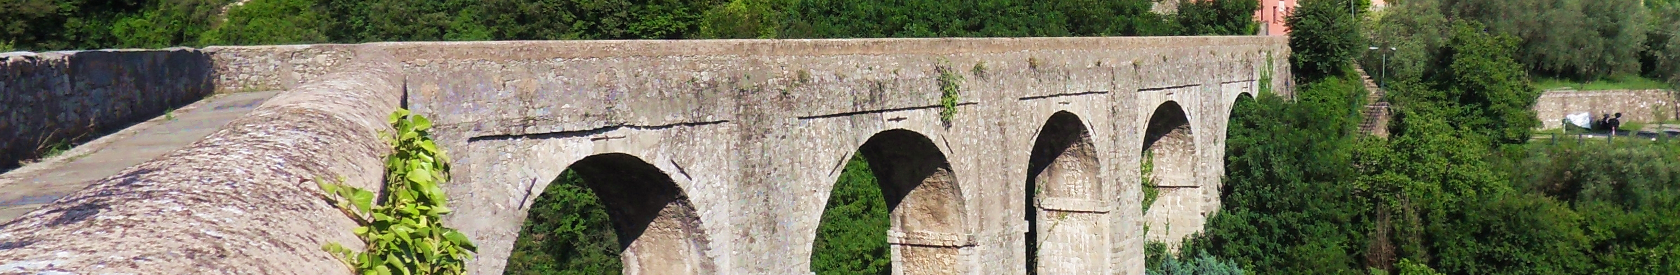 Mappatura “open” sul sentiero dell’acquedotto storico del 1600